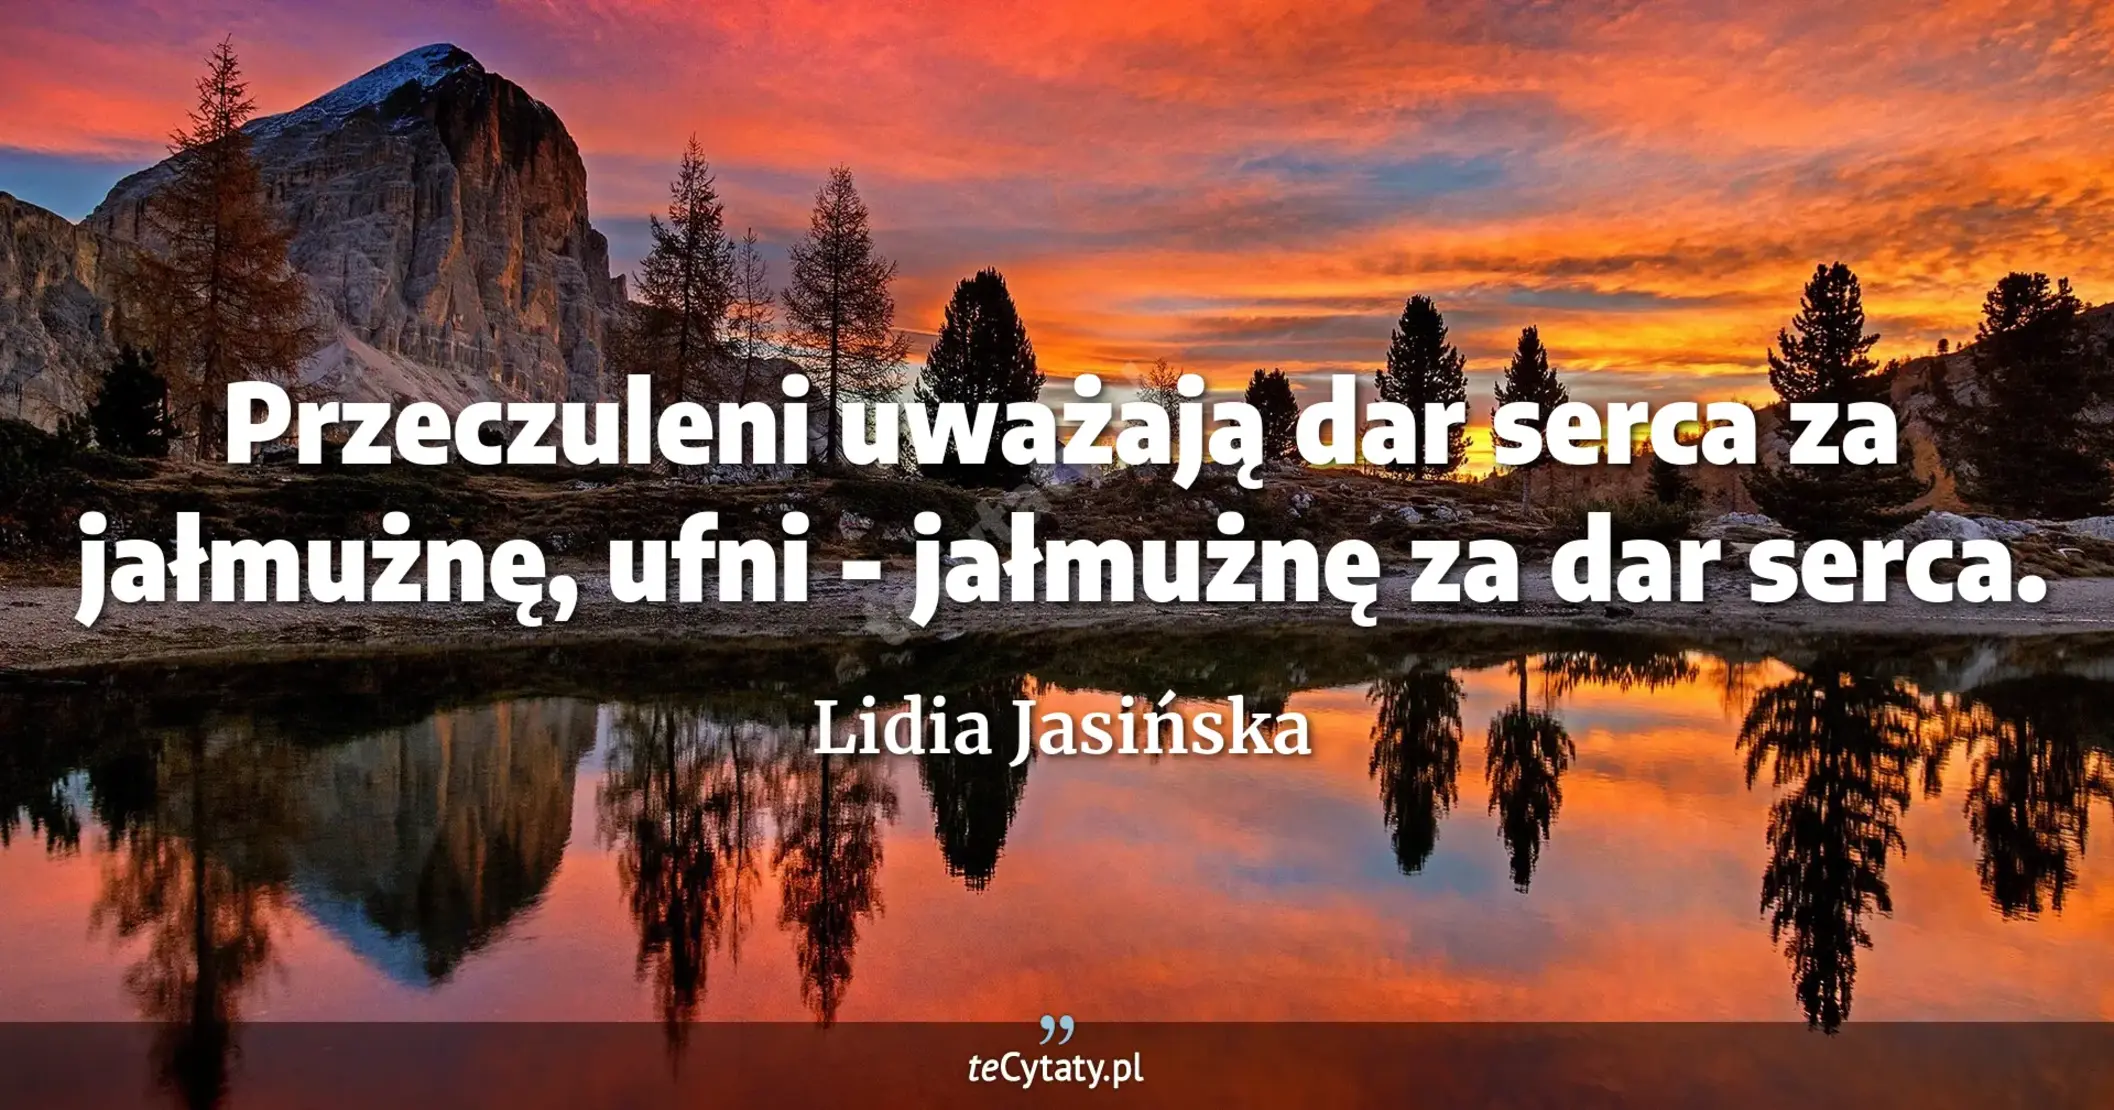 Przeczuleni uważają dar serca za jałmużnę, ufni - jałmużnę za dar serca. - Lidia Jasińska